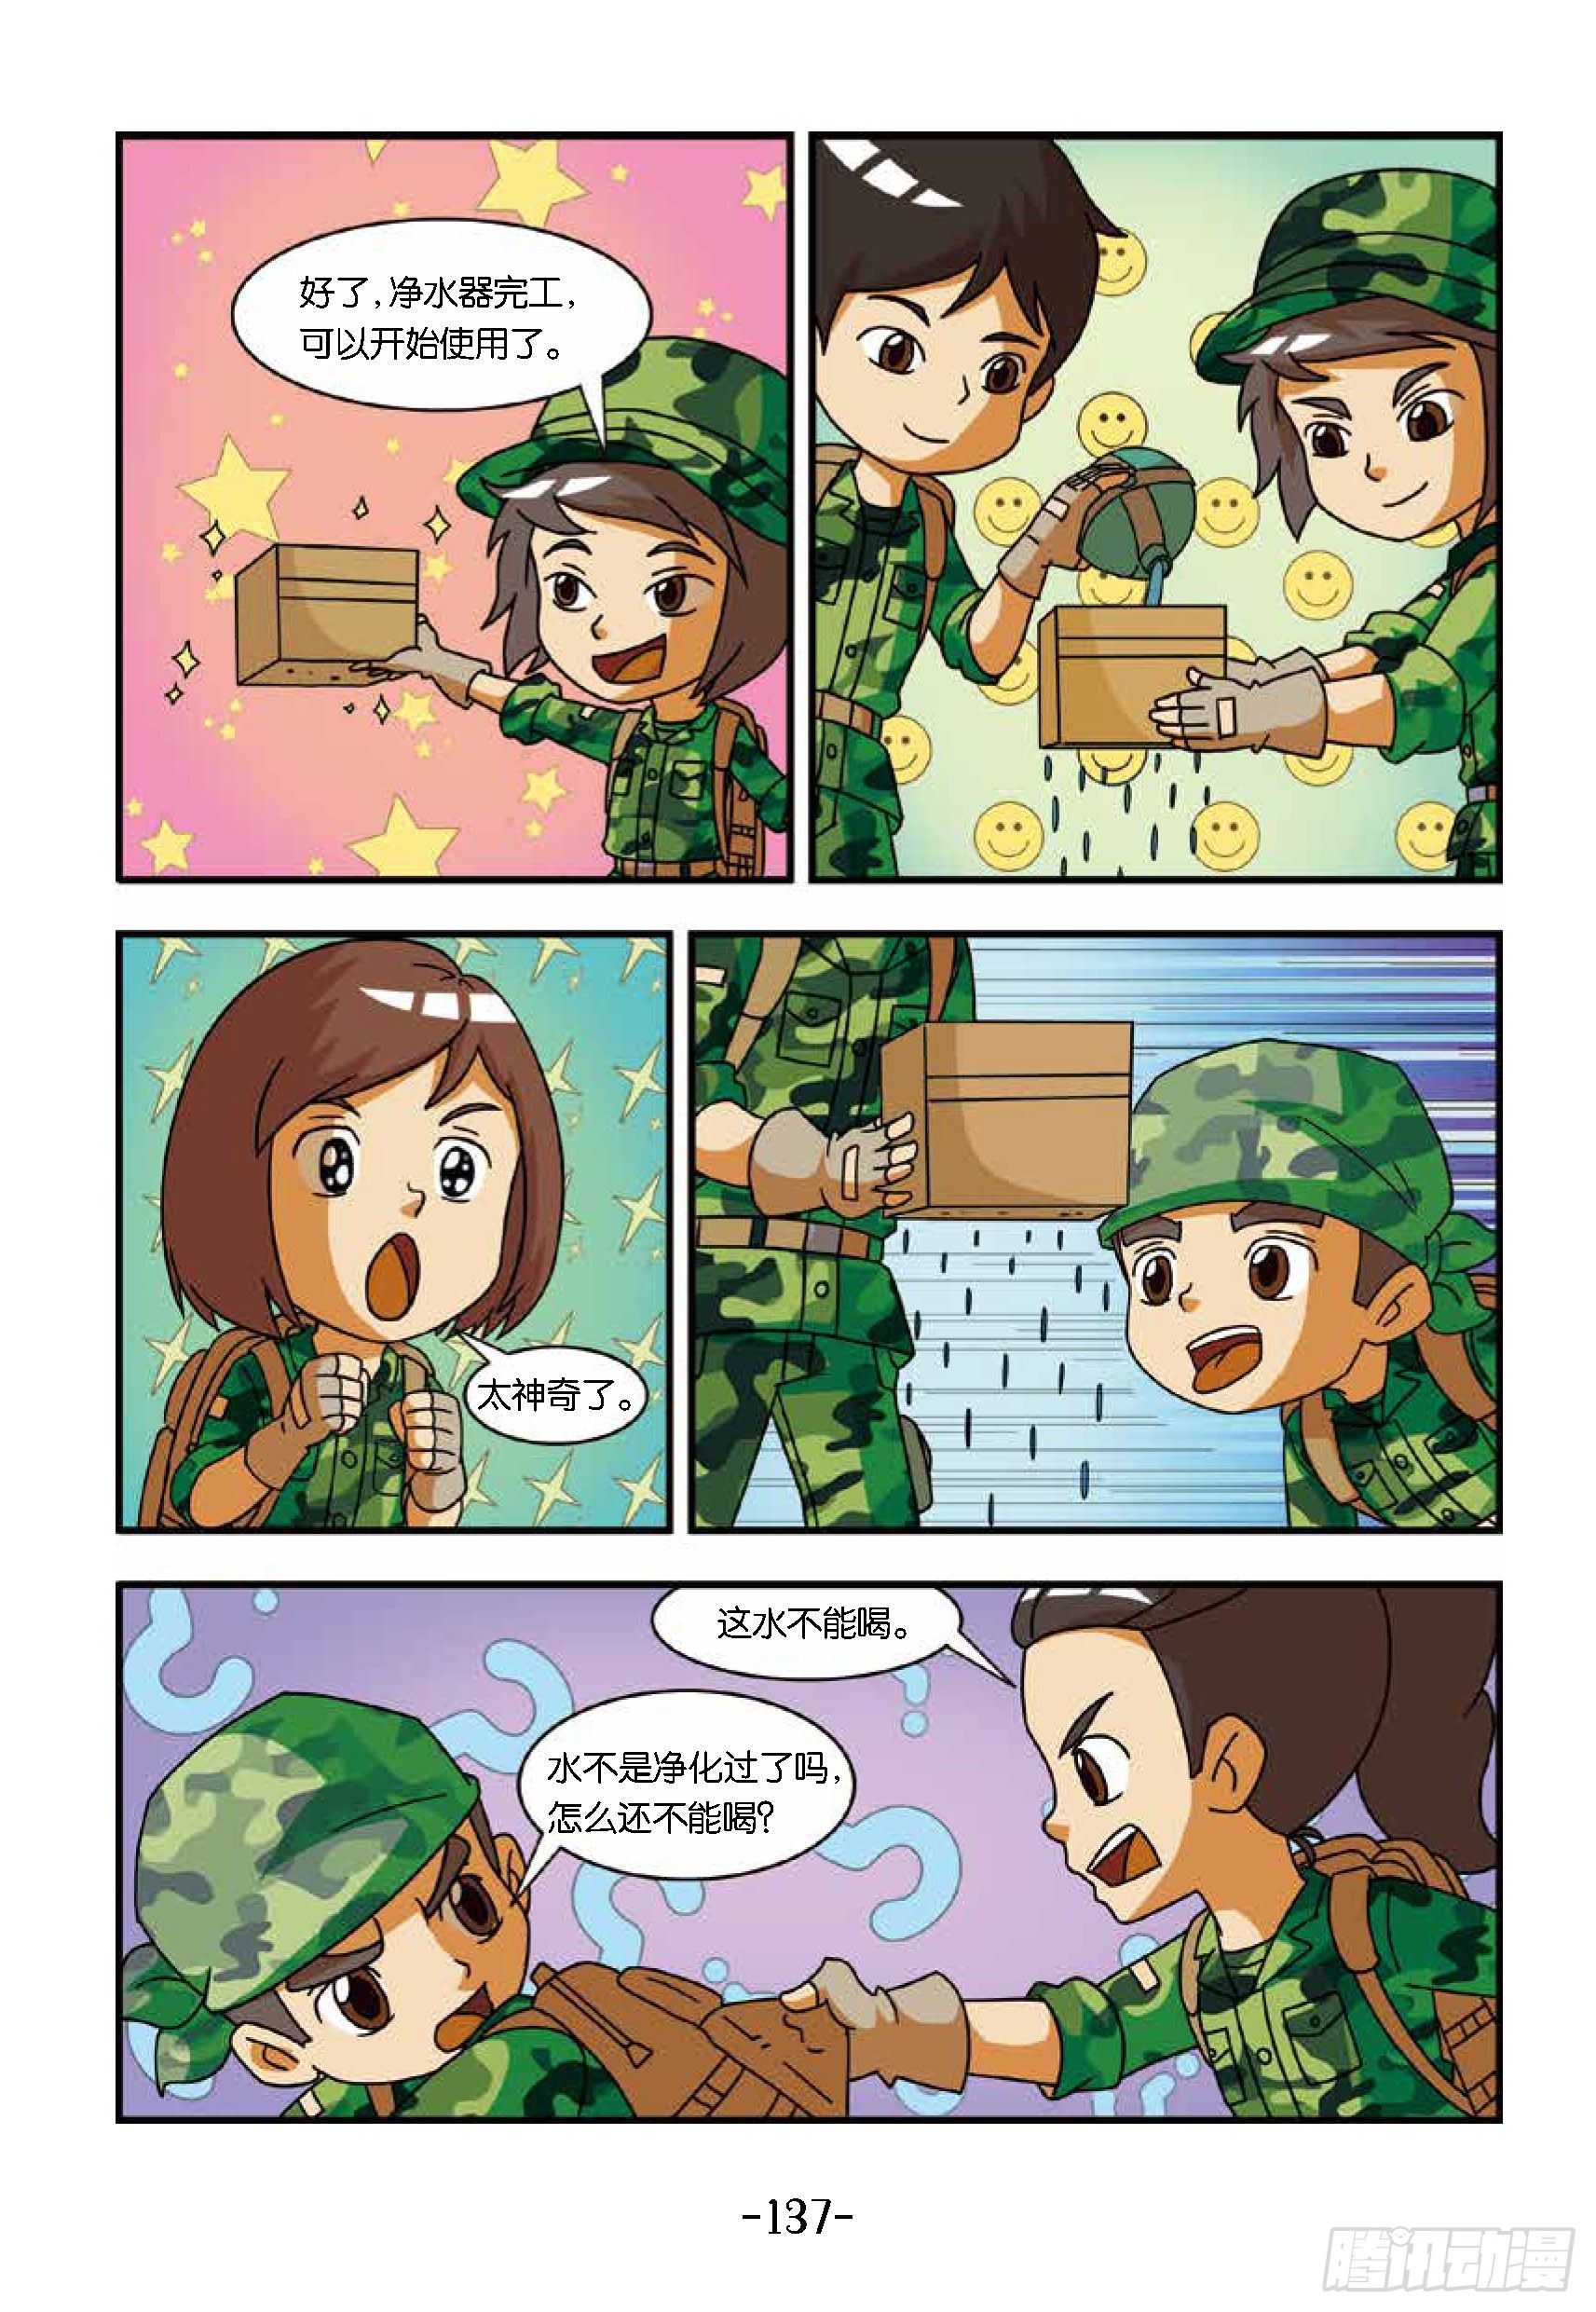 特種兵學校漫畫版 - 新兵集結號第14話：東北虎中毒 - 2